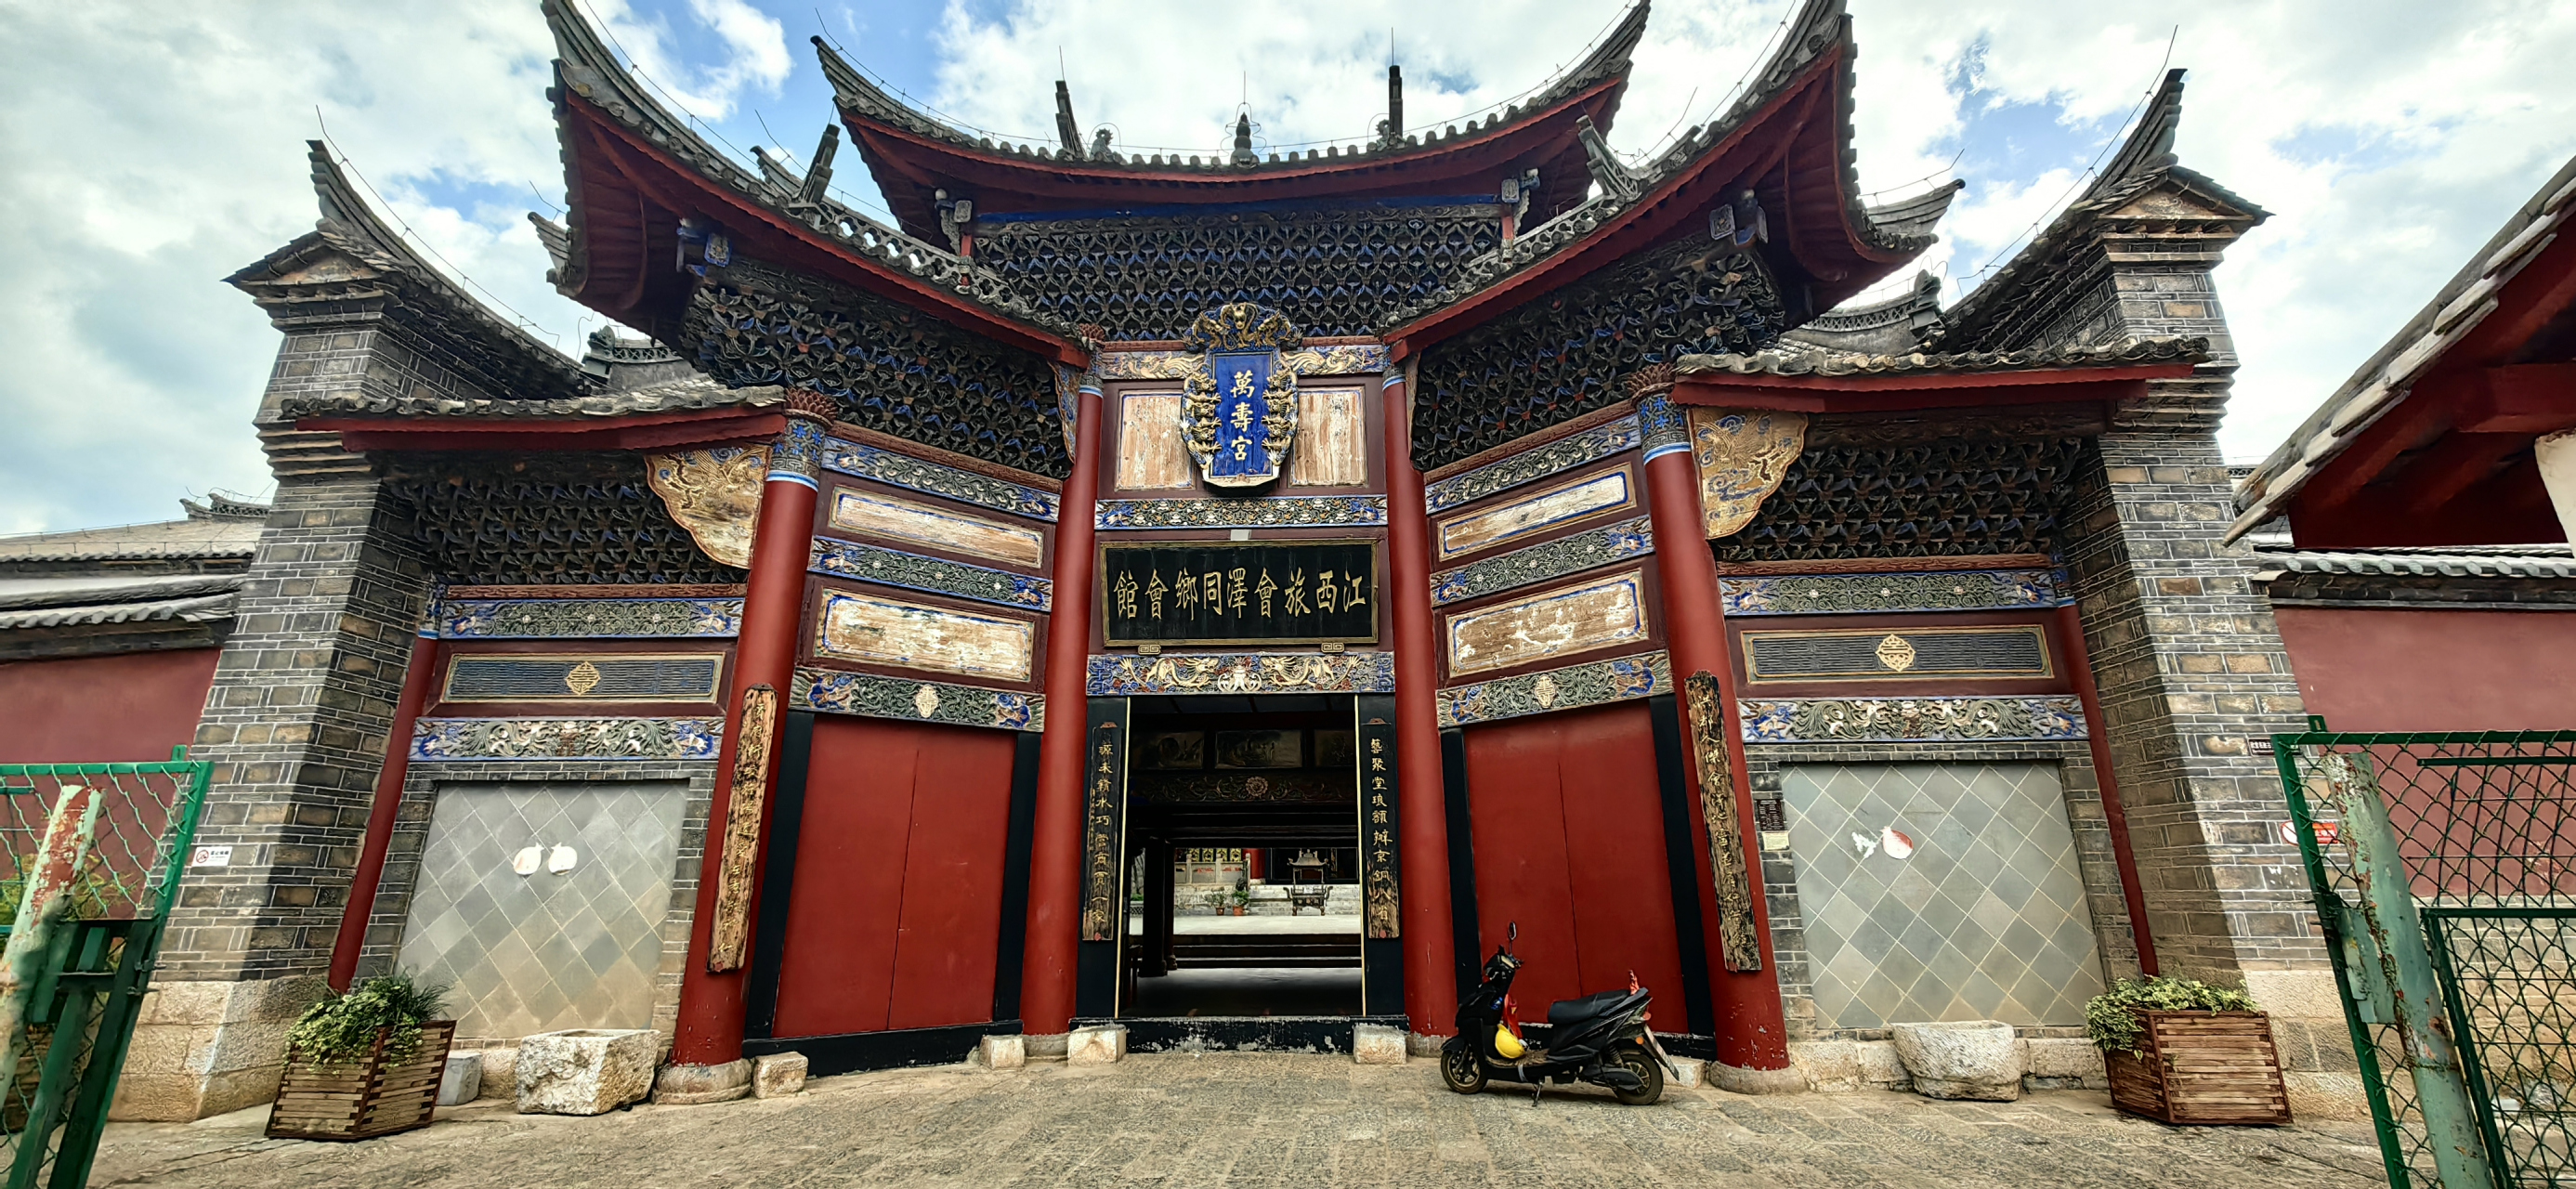 #旅行摄影# 会泽江西会馆历经300年风雨,堪称中国古建筑经典之作